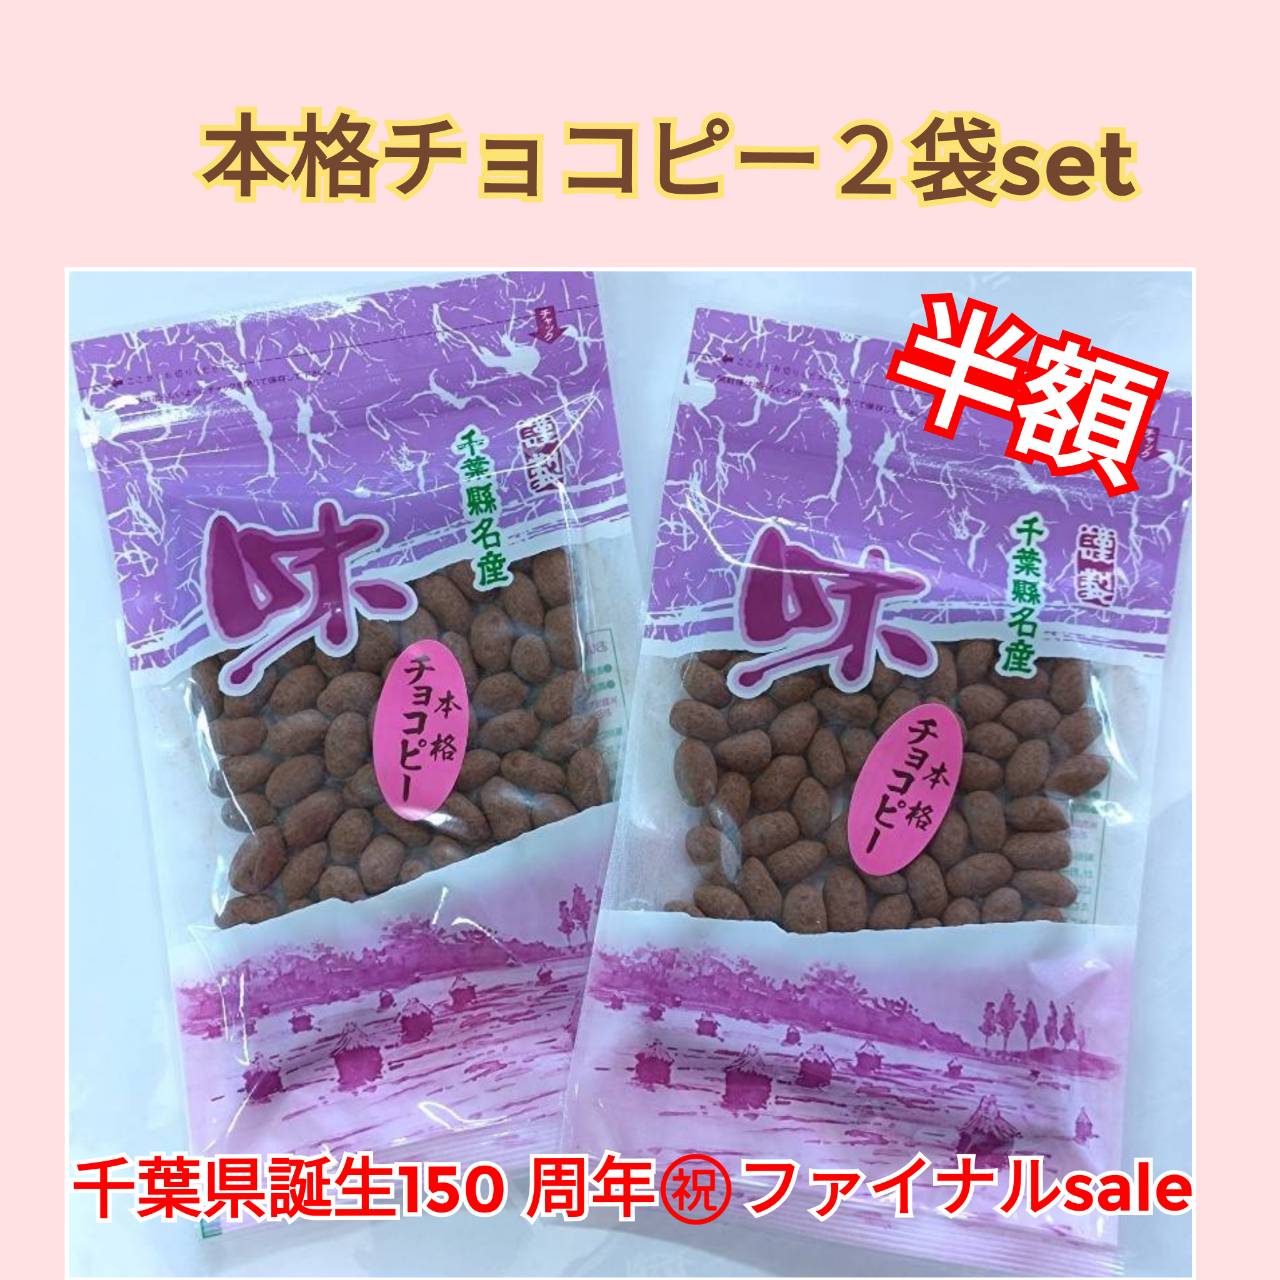 千葉県誕生150周年㊗️ファイルsale/本格チョコピー2袋set半額